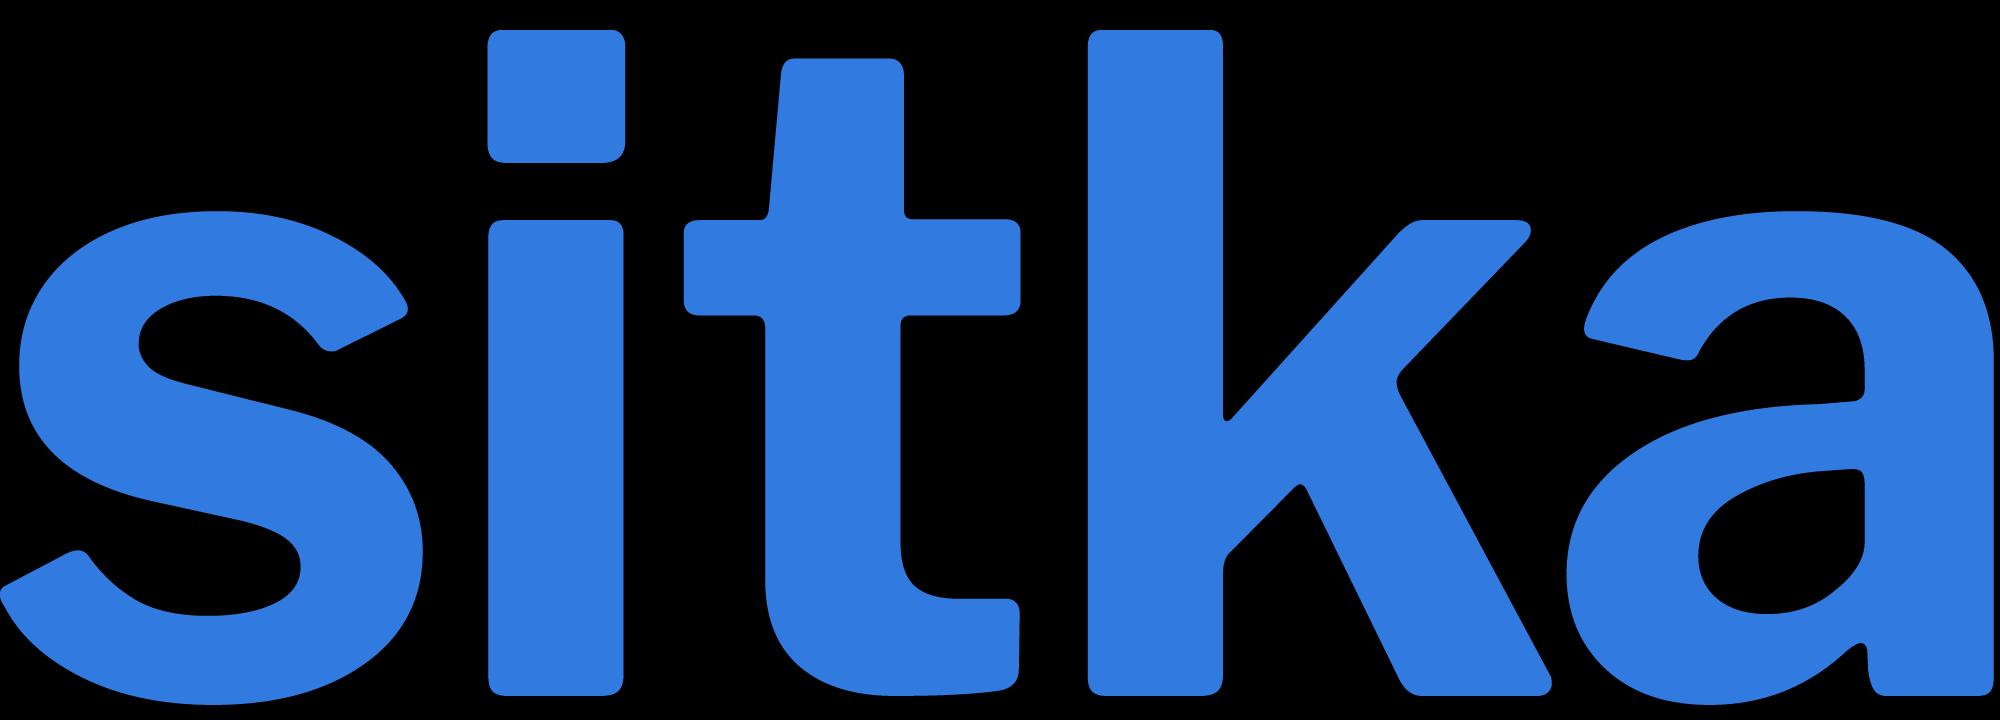 Sitka_logo